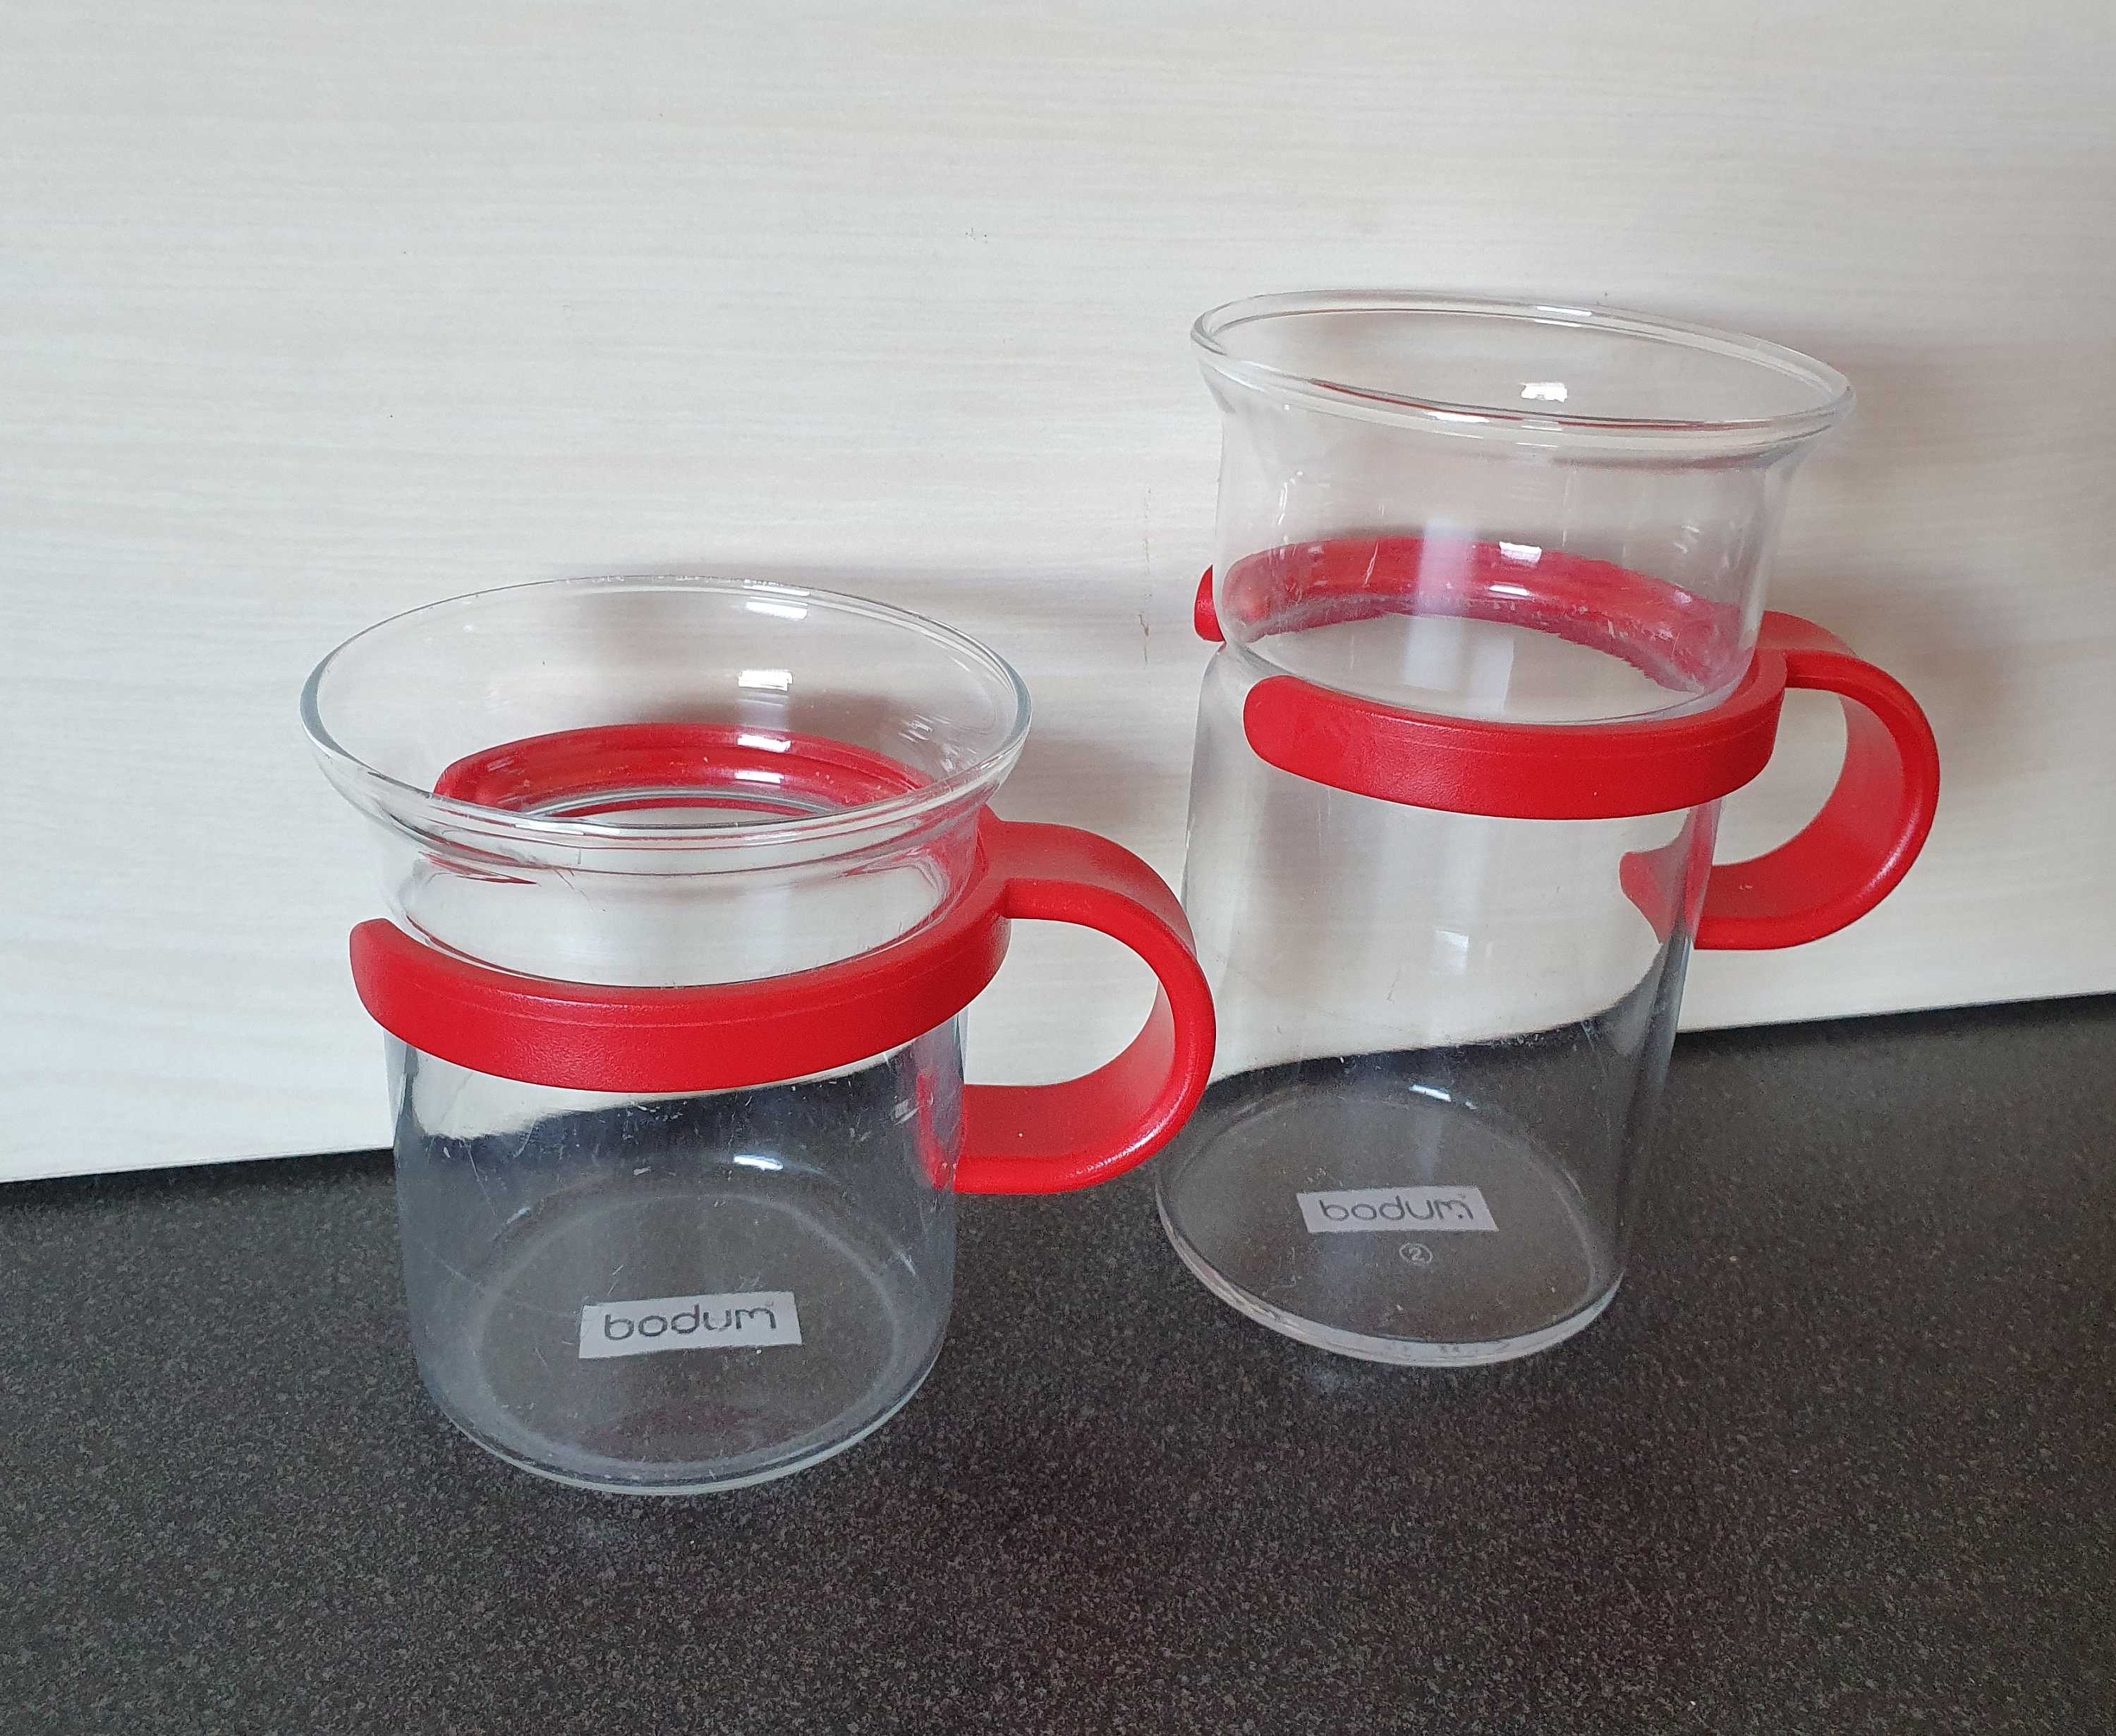 Gläser & Kannen Gläser-Sets Set Gläser-Sets Home Essen Tassen Teegläser 4 er Set neu Bodum 